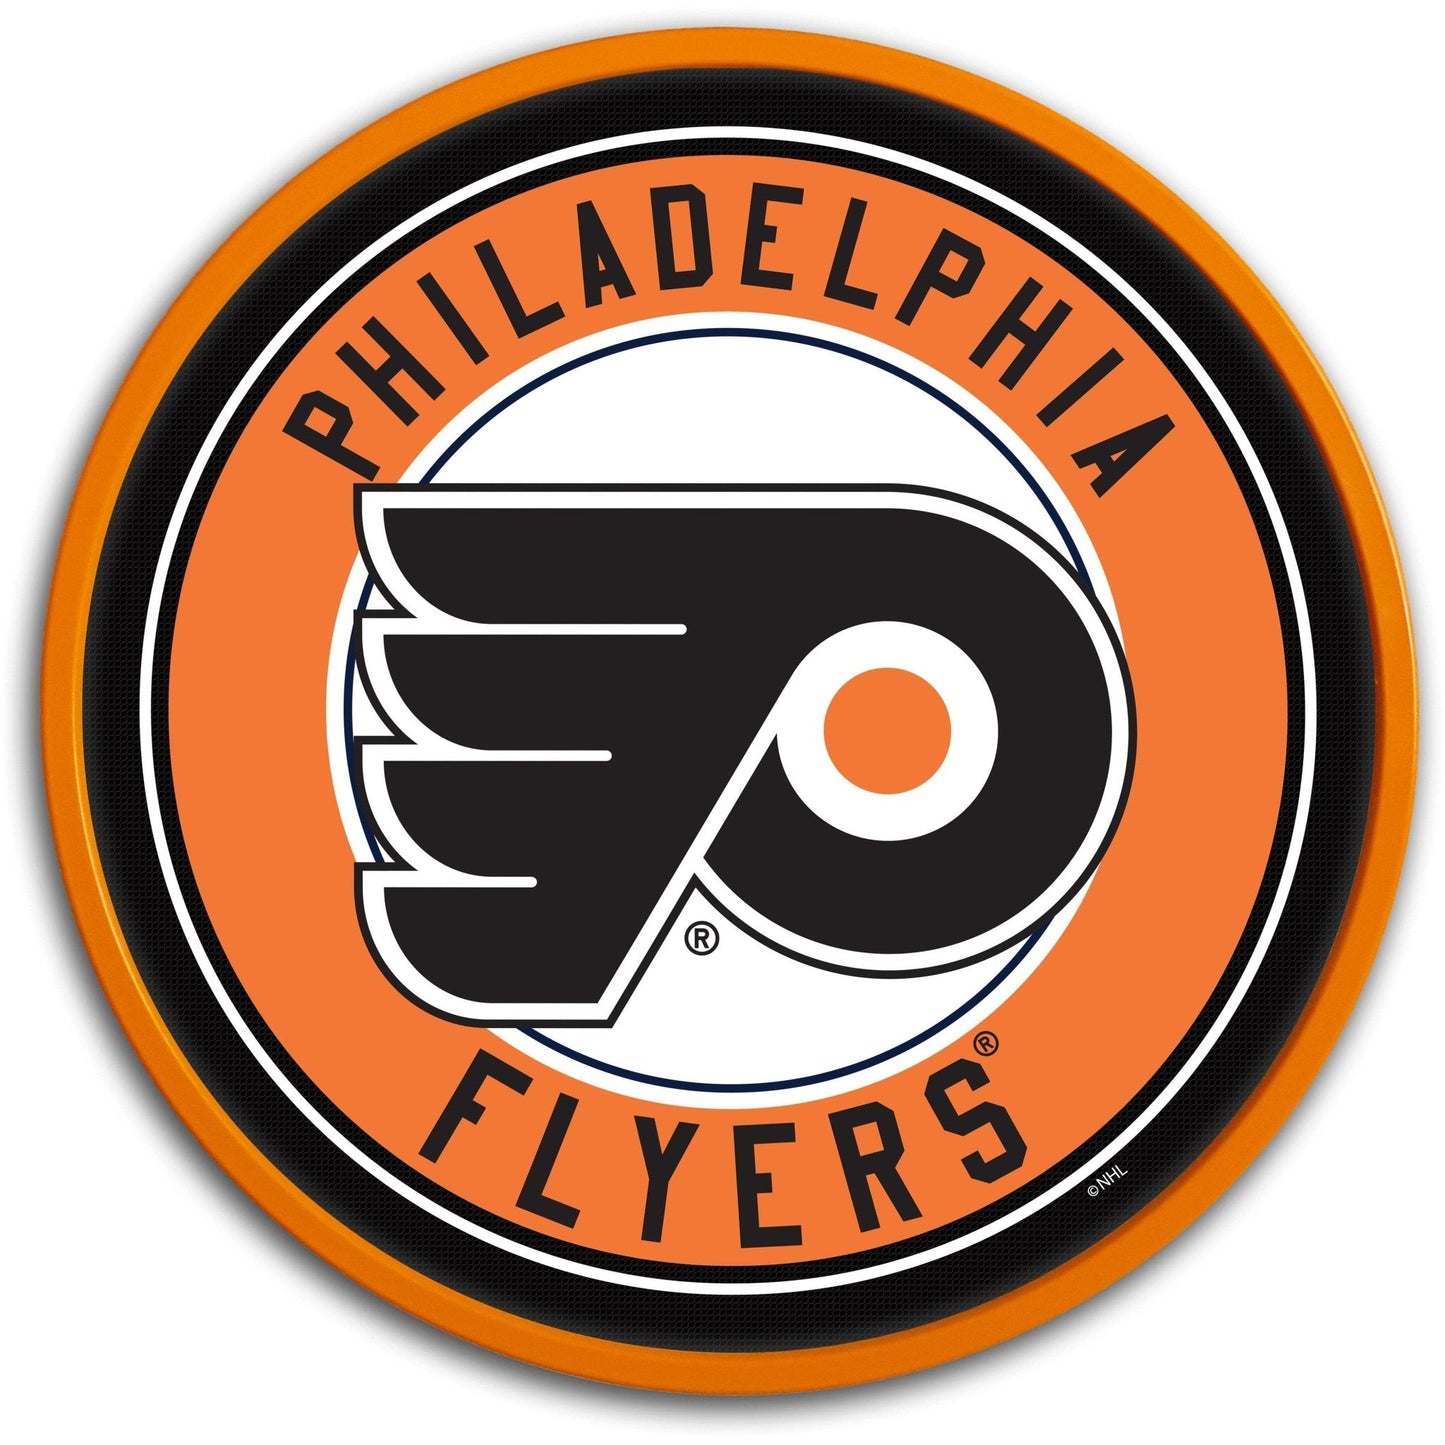 Philadelphia Flyers: Modern Disc Wall Sign - The Fan-Brand